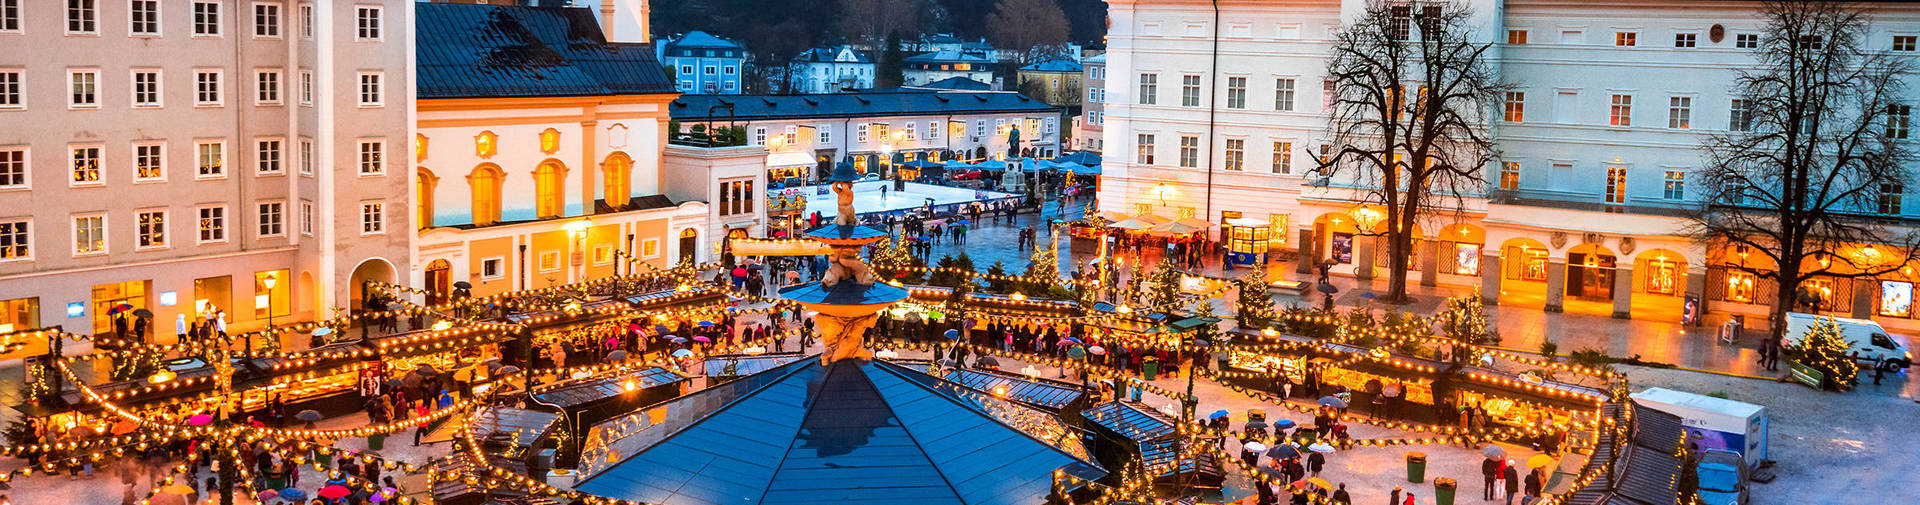 Weihnachtsshopping in Salzburg - H-Hotels.com - Offizielle Webseite